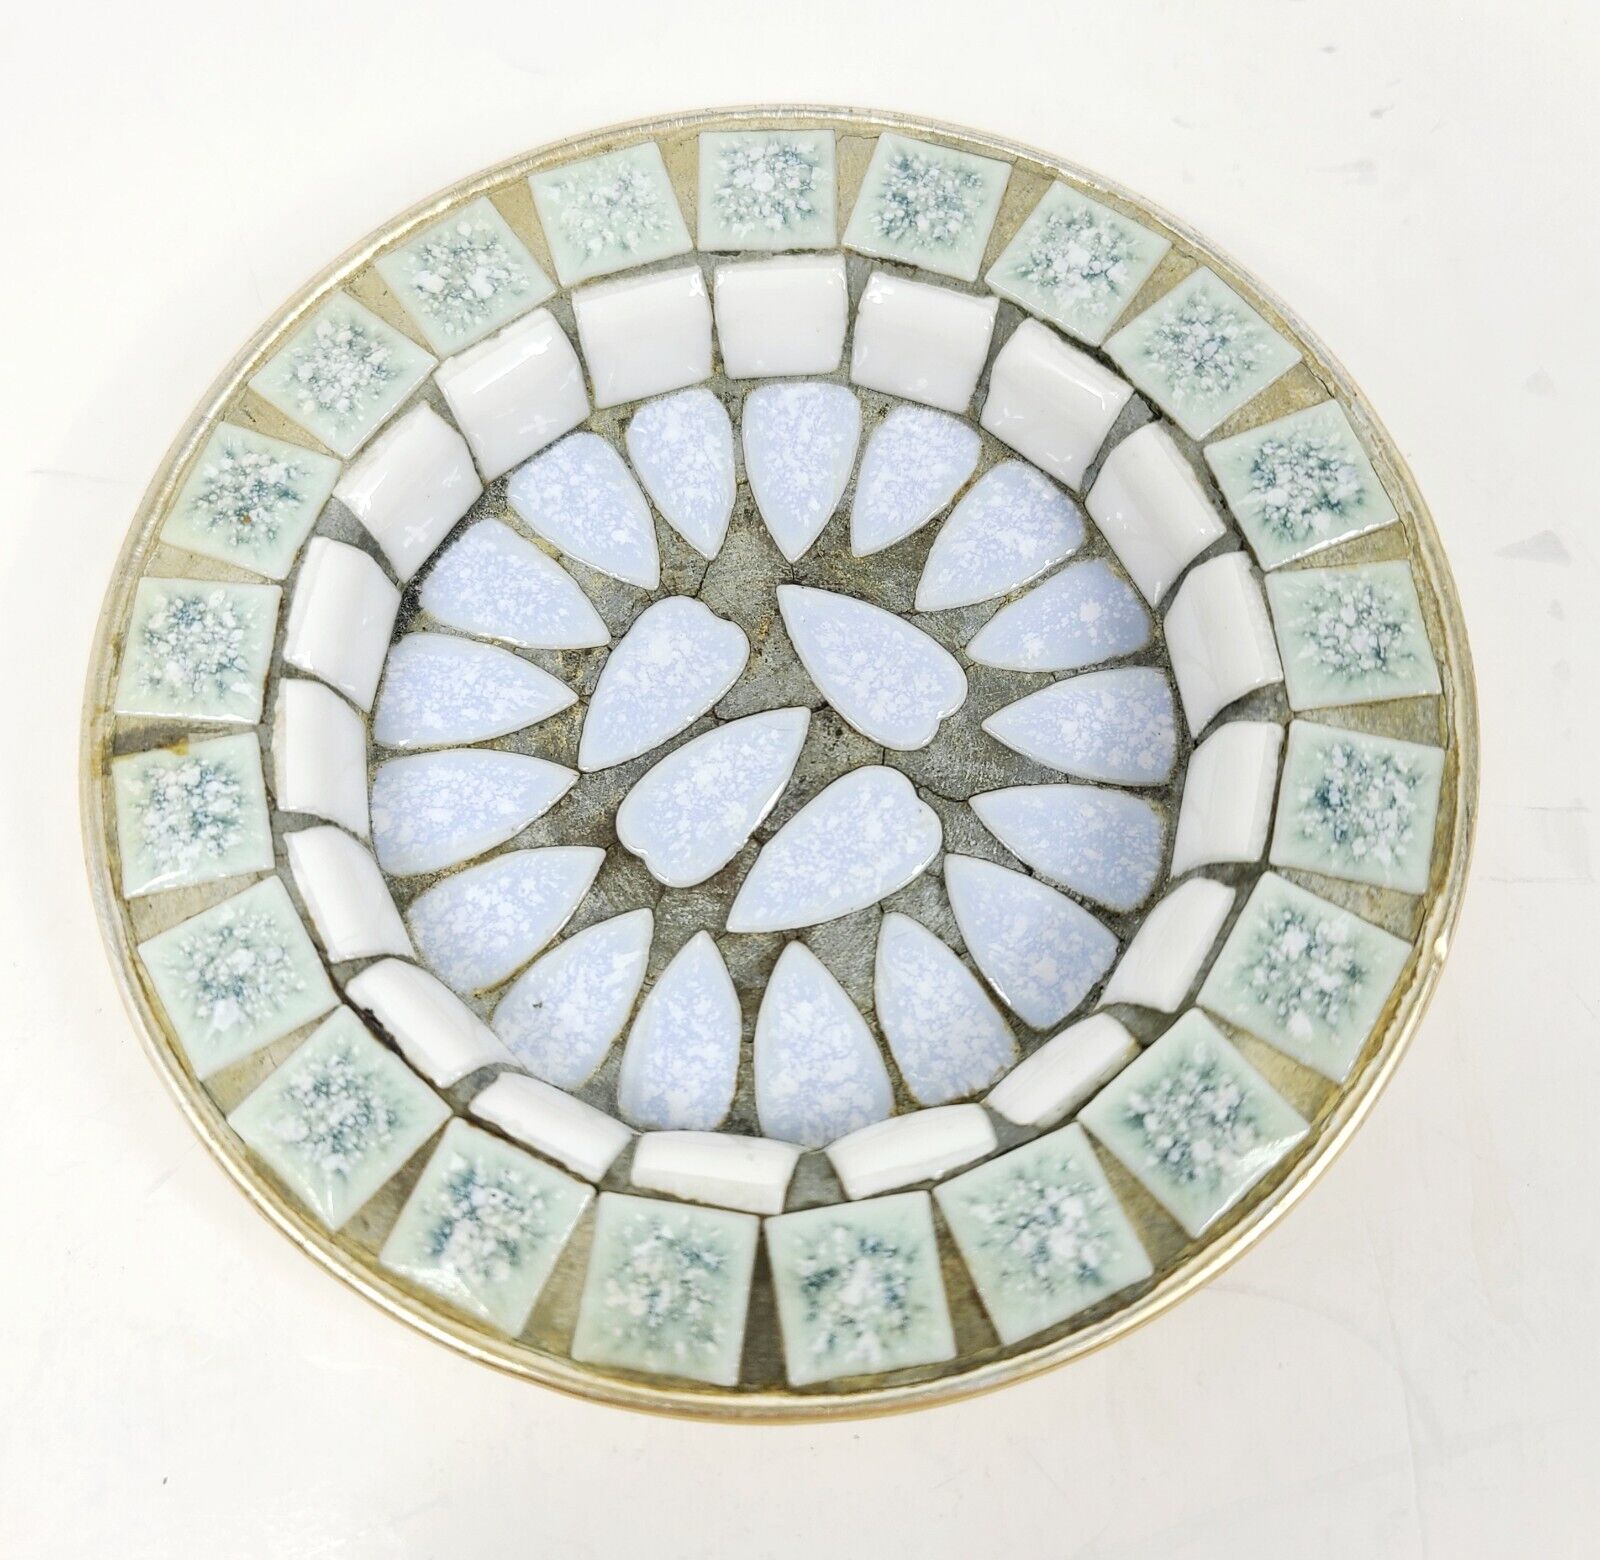 Vintage Mid-Century Modern Mosaic Tile Coasters Ashtrays, Japan, MCM